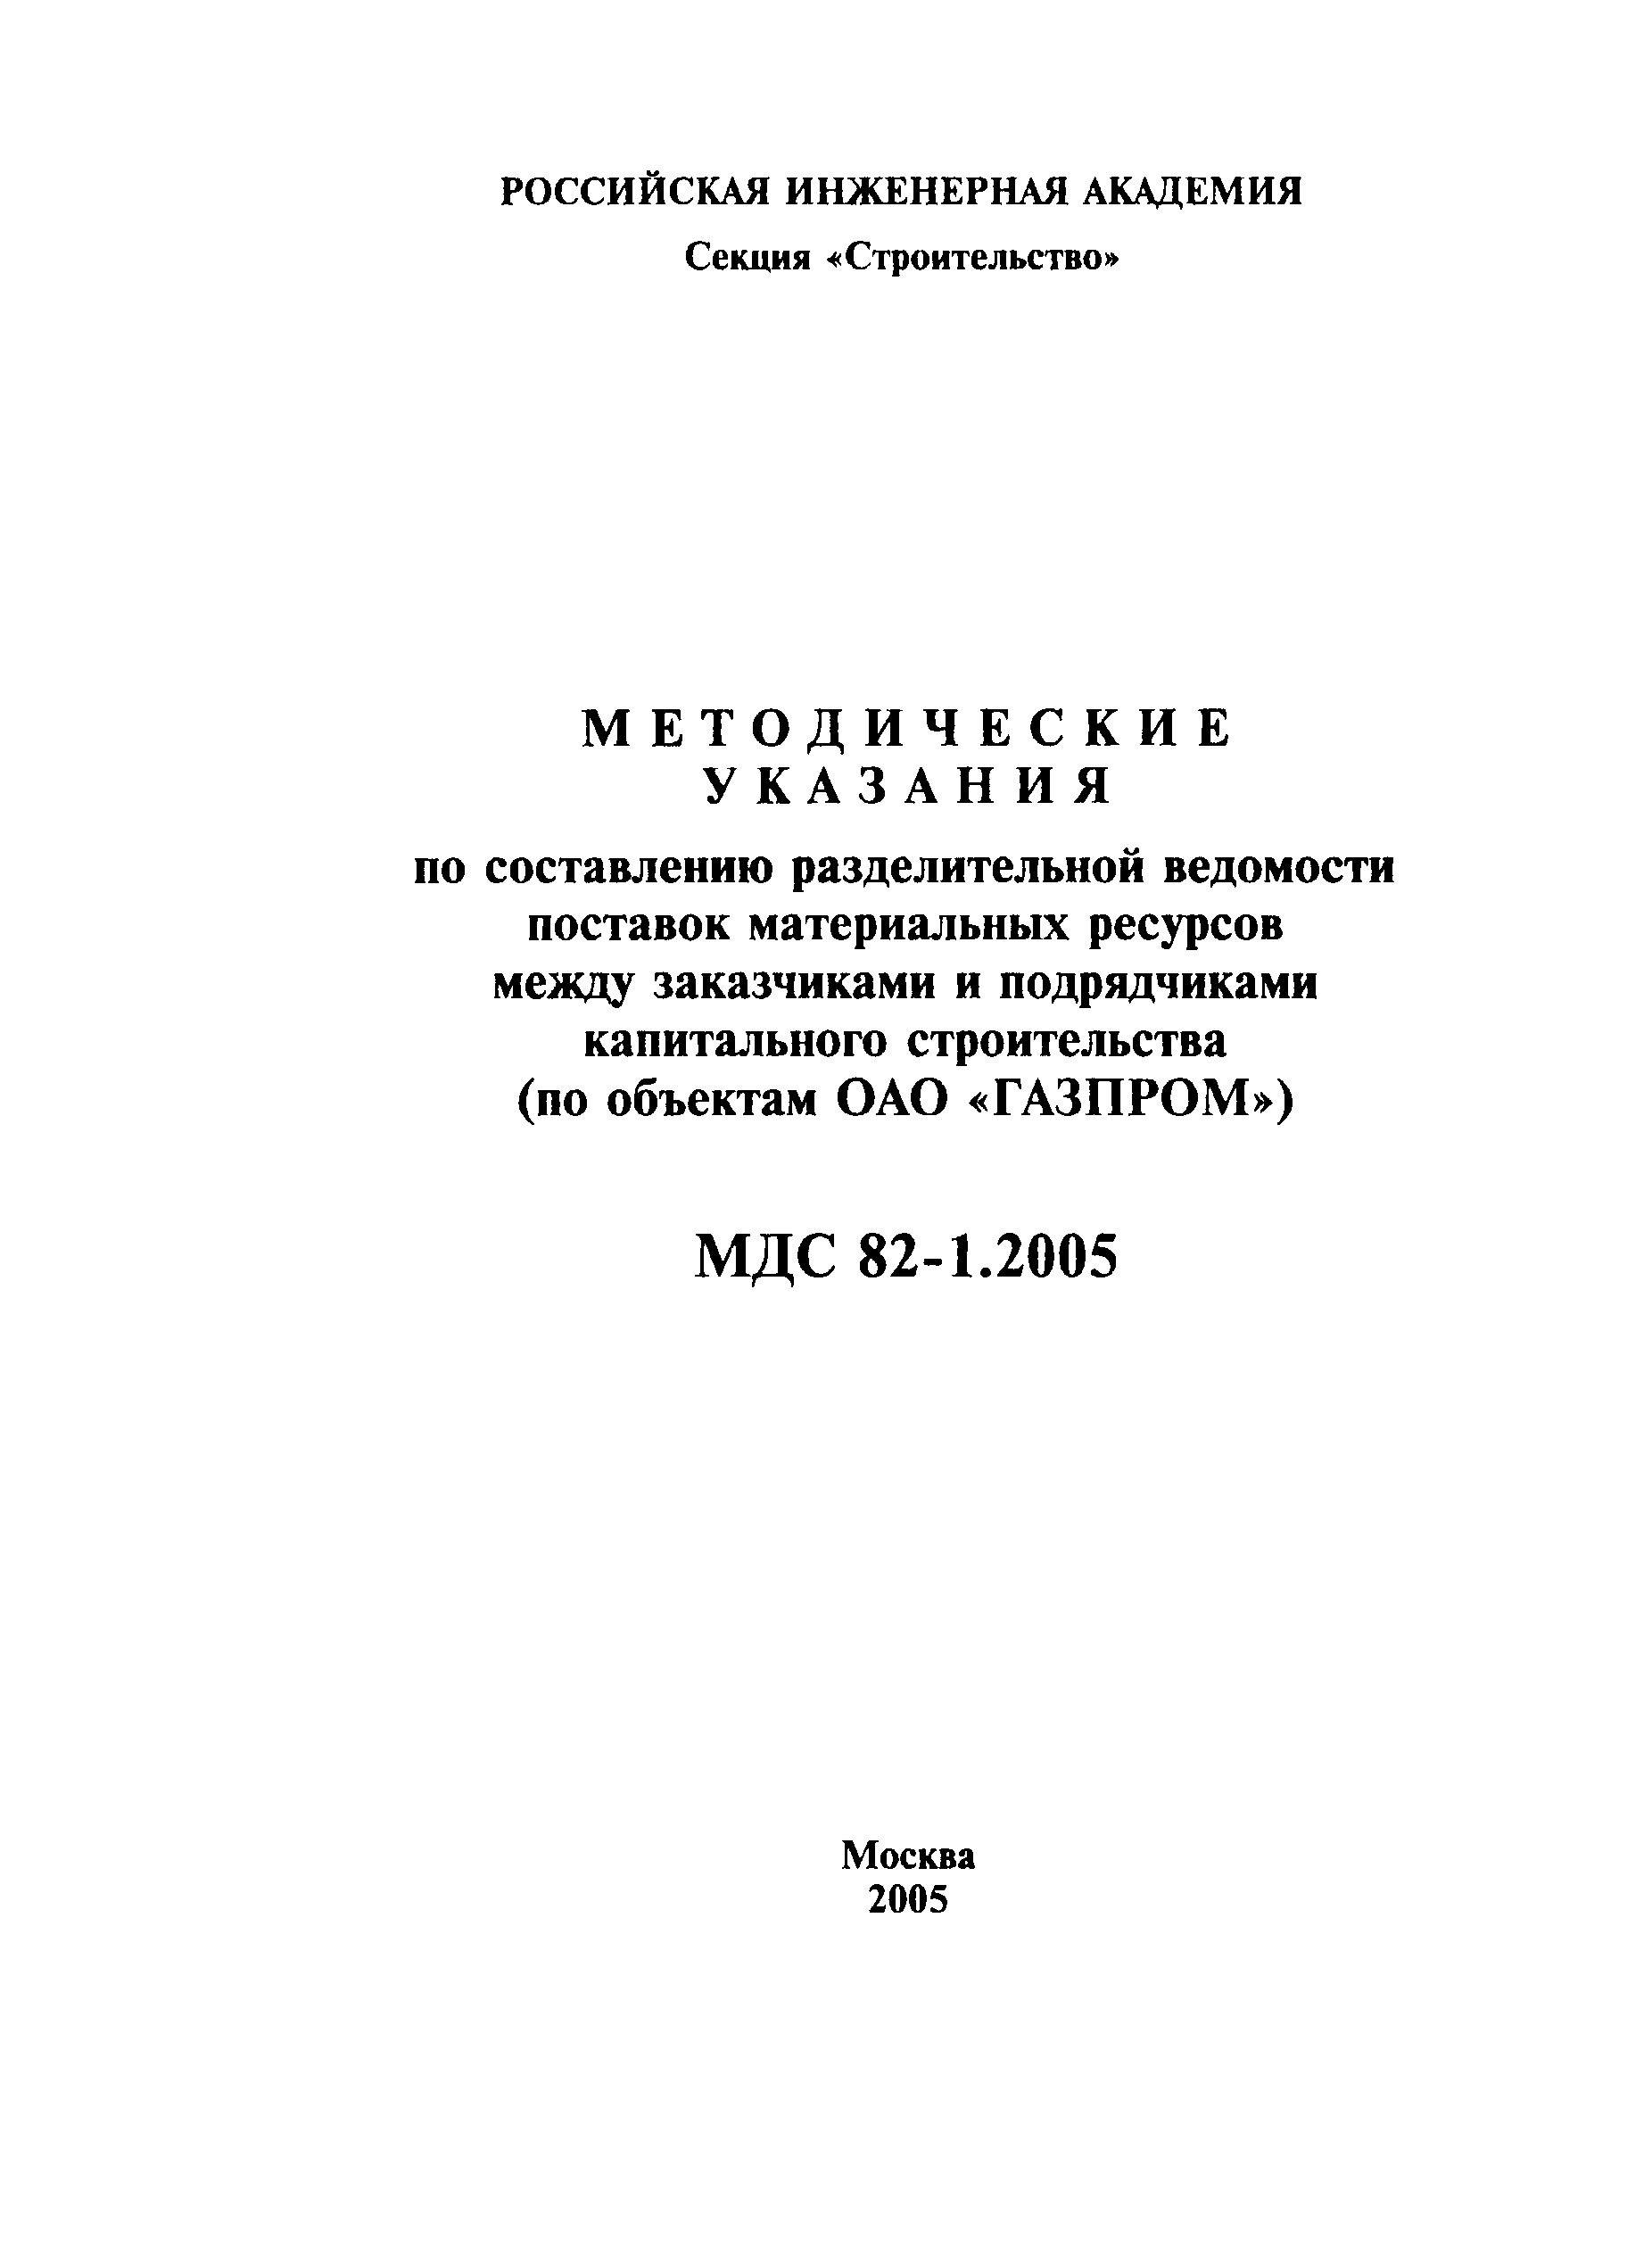 МДС 82-1.2005